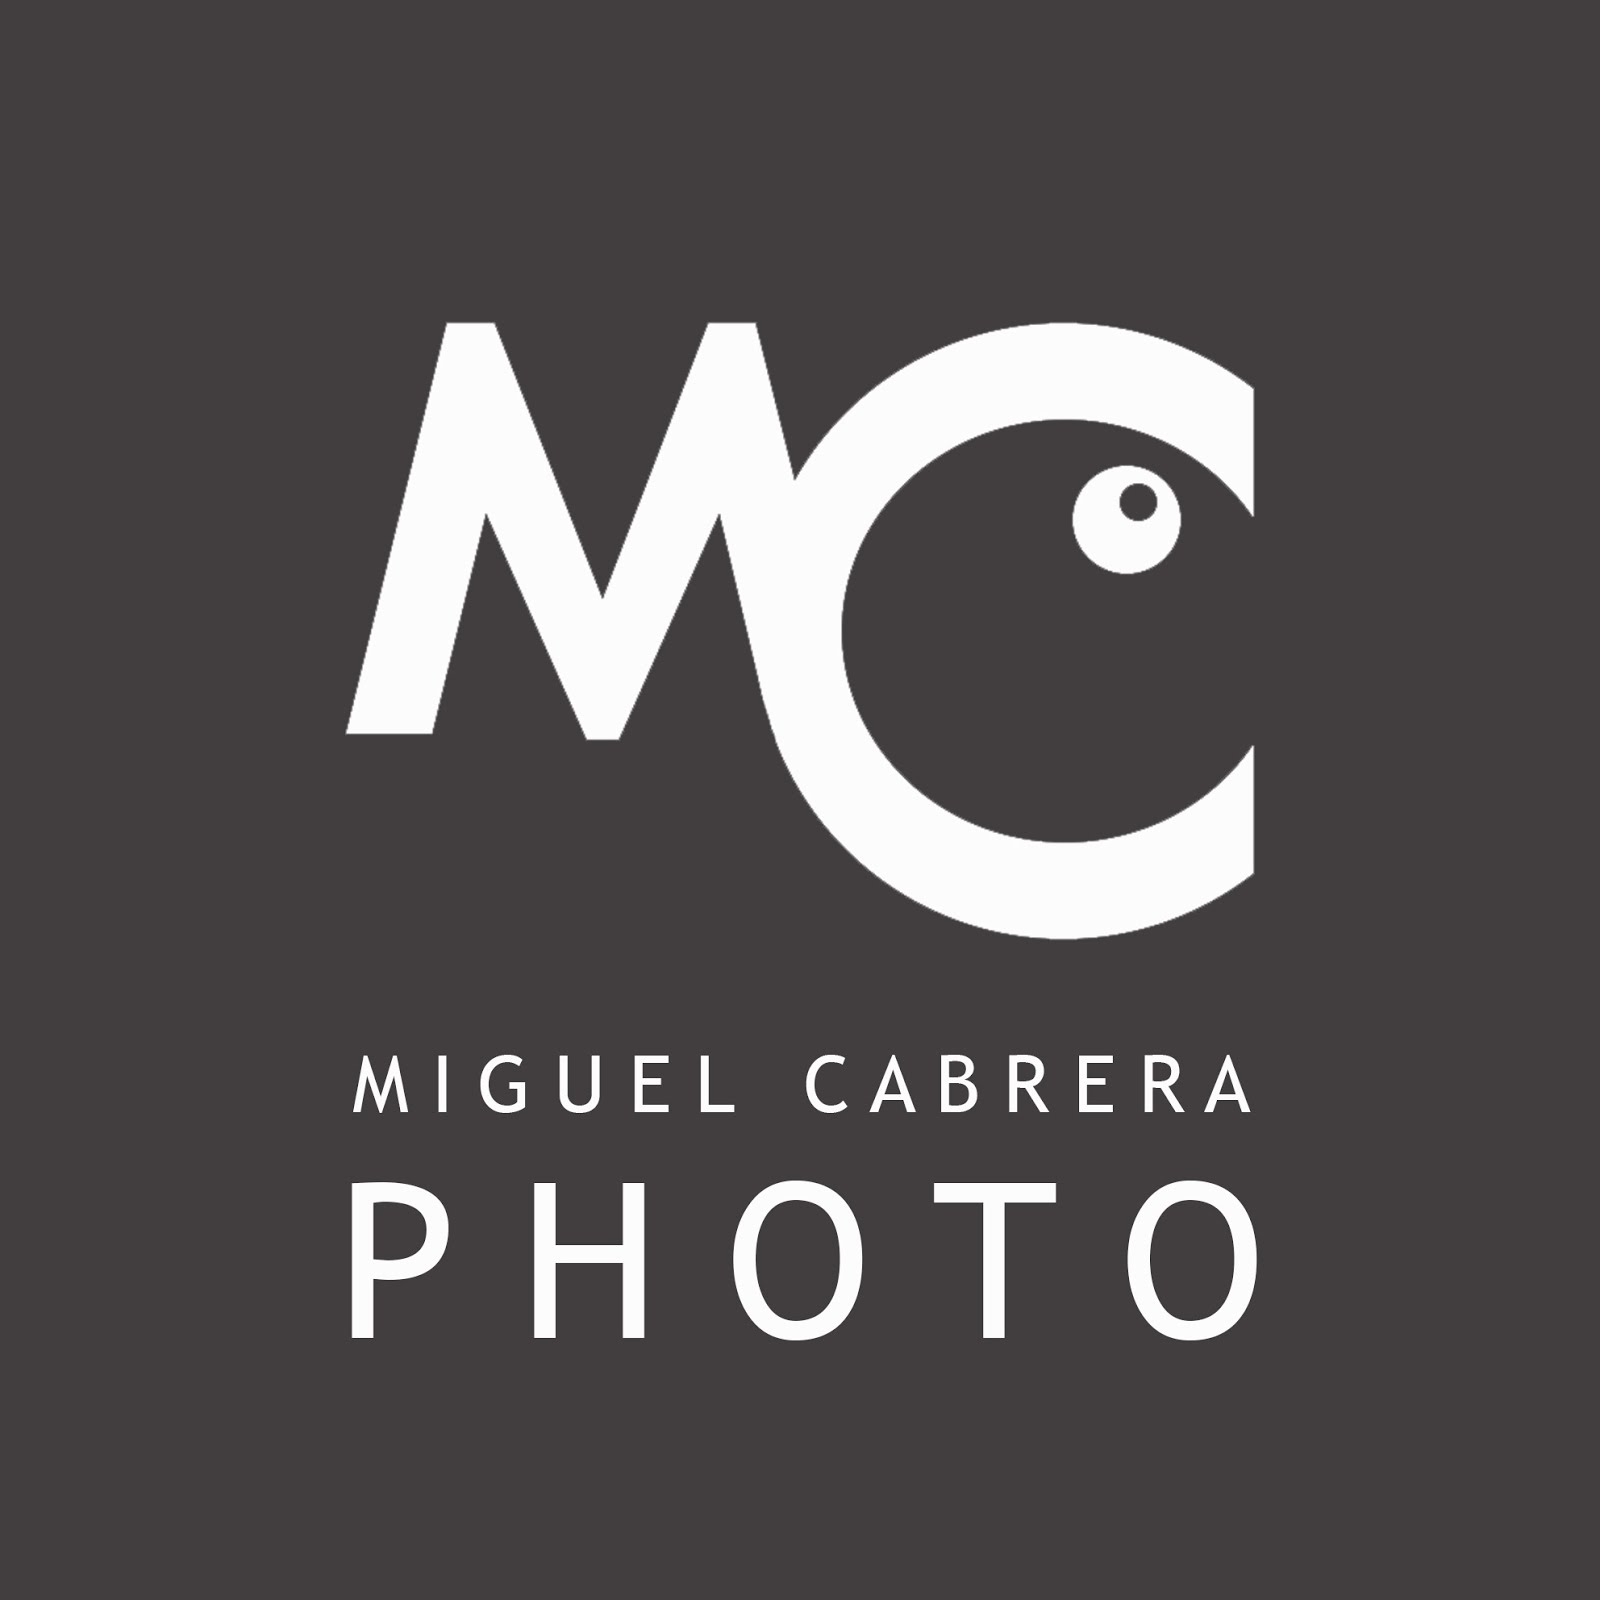 Miguel Cabrera ©